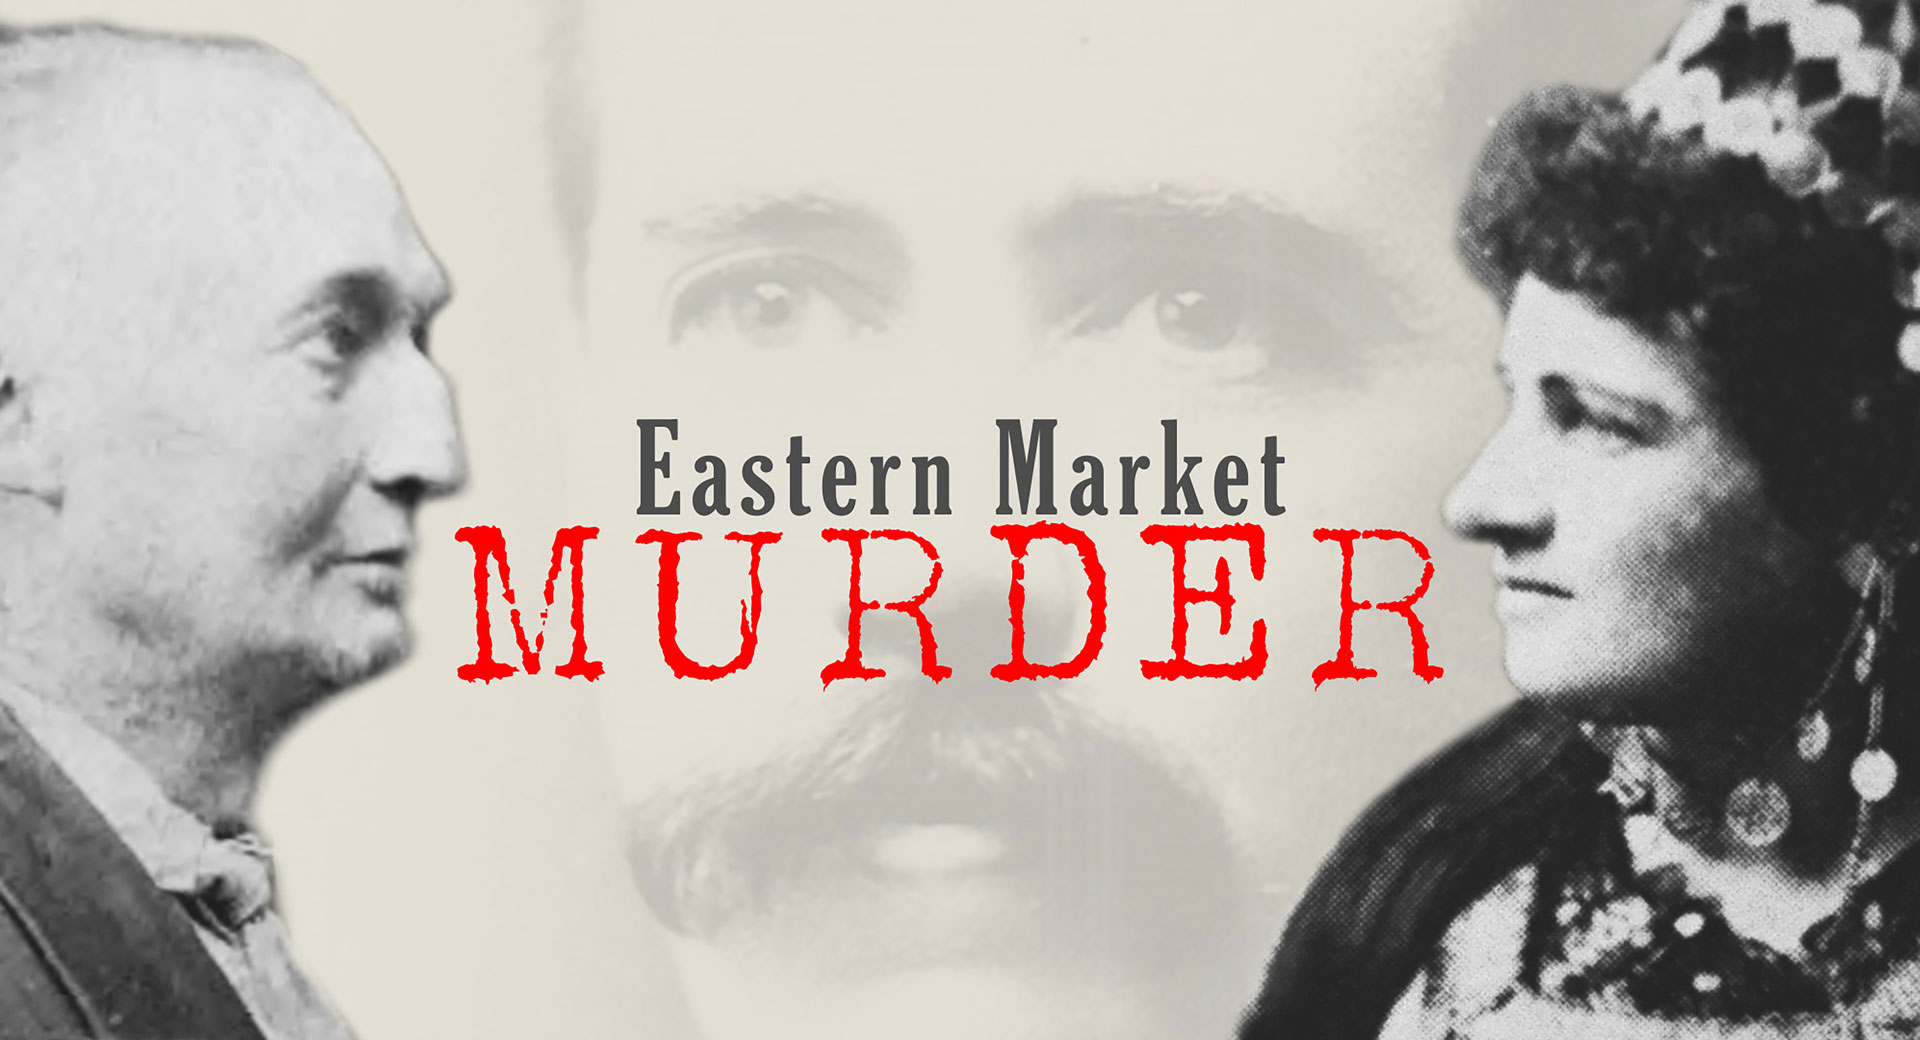 NYX Game Awards - Eastern Market Murder